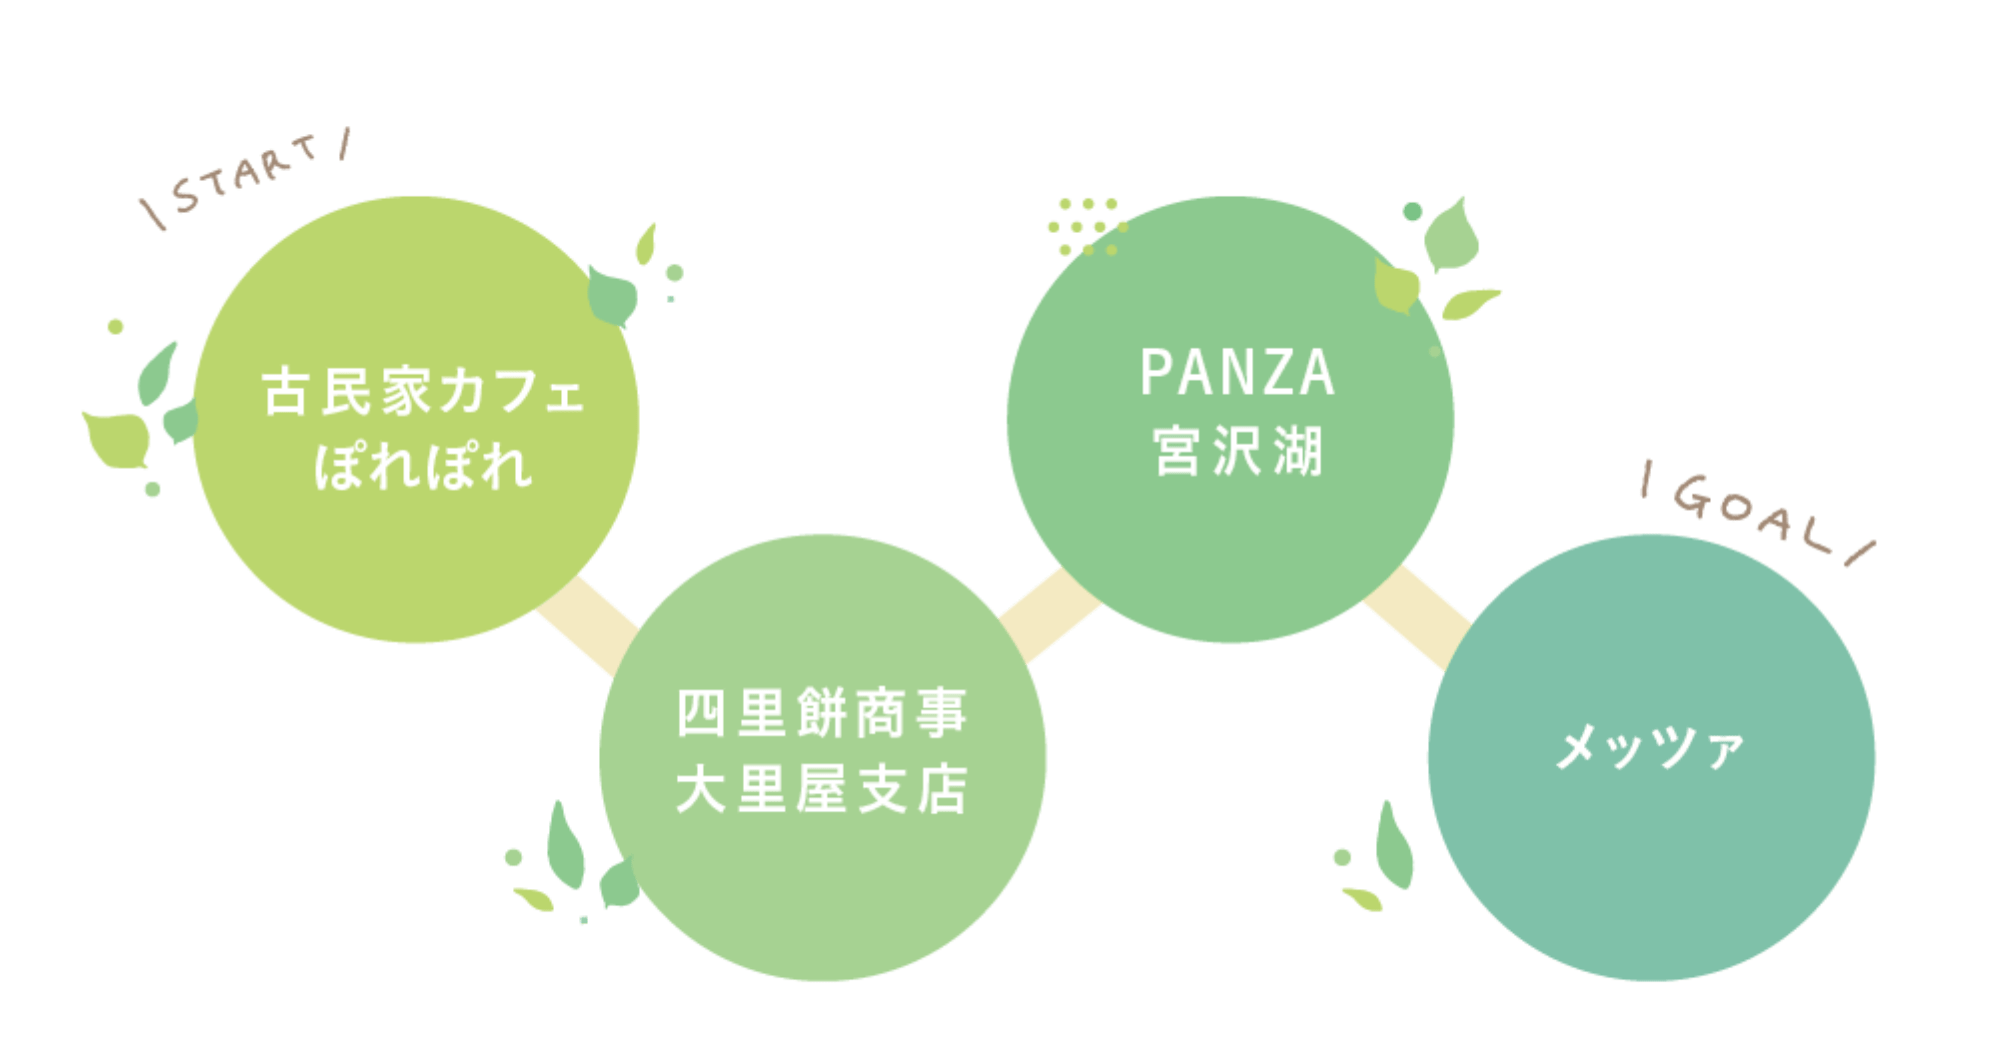 PANZA宮沢湖周辺 お楽しみコース